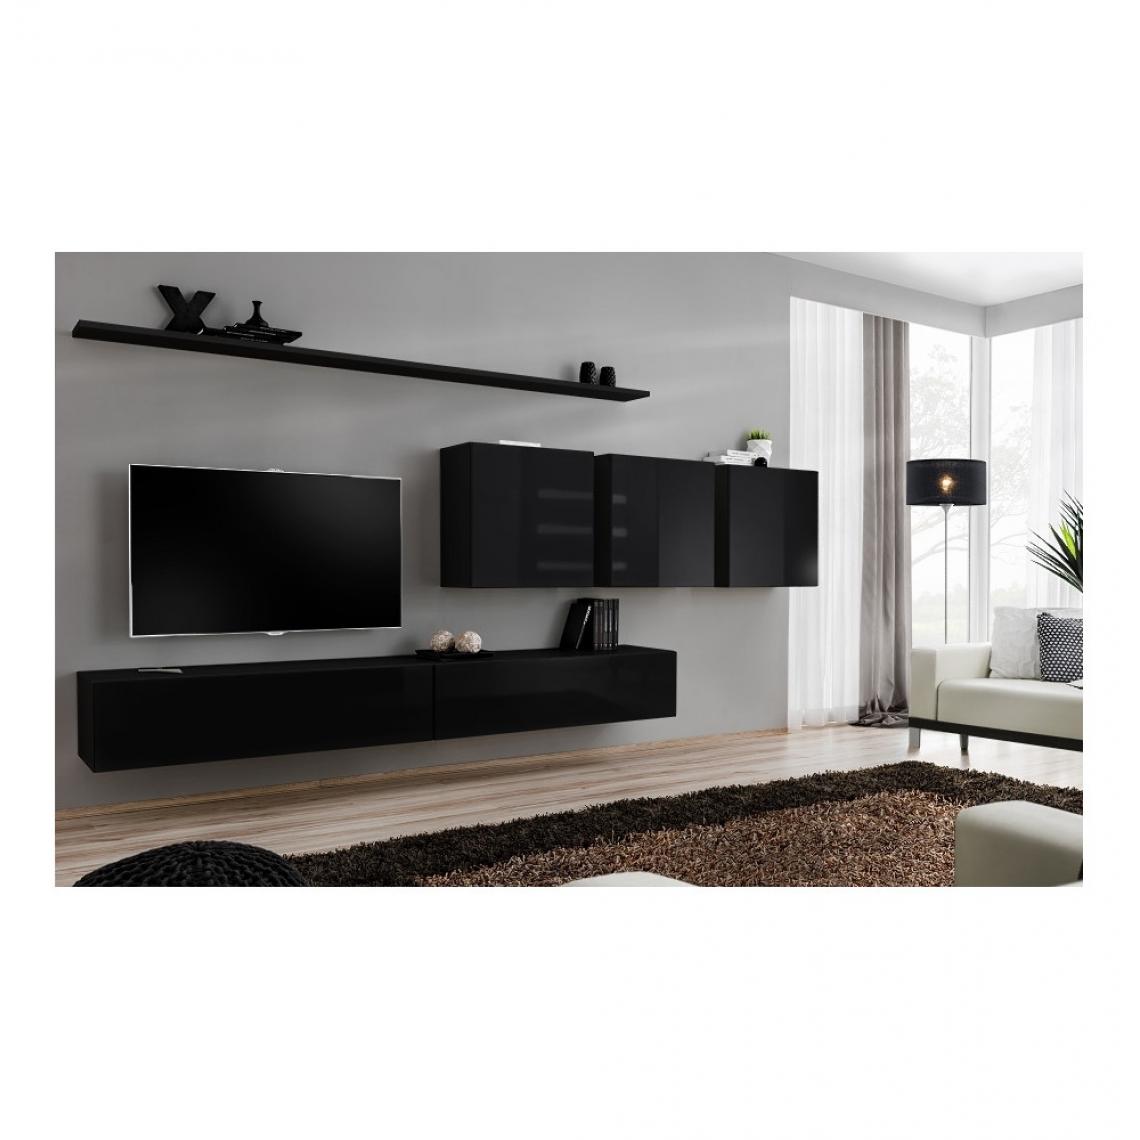 Ac-Deco - Ensemble meuble TV mural - Switch VII - 340 cm x 150 cm x 40 cm - Noir - Meubles TV, Hi-Fi